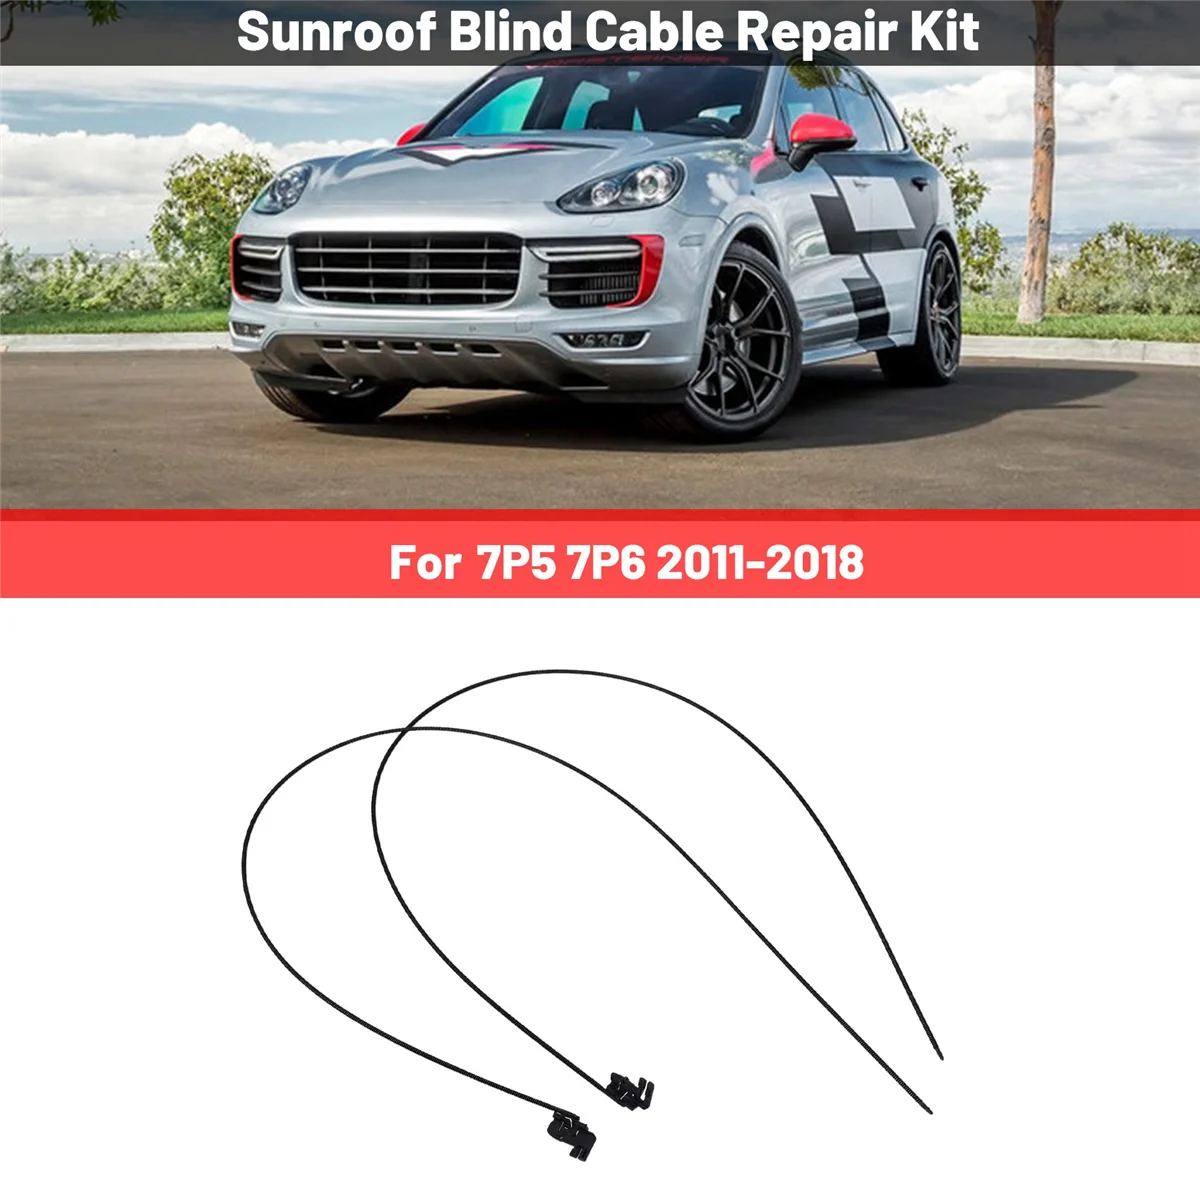 

2 Pcs/Set Car Sunroof Blind Cable Repair Kit for Porsche Cayenne VW Touareg 7P5 7P6 2011-2018 7P0898870A